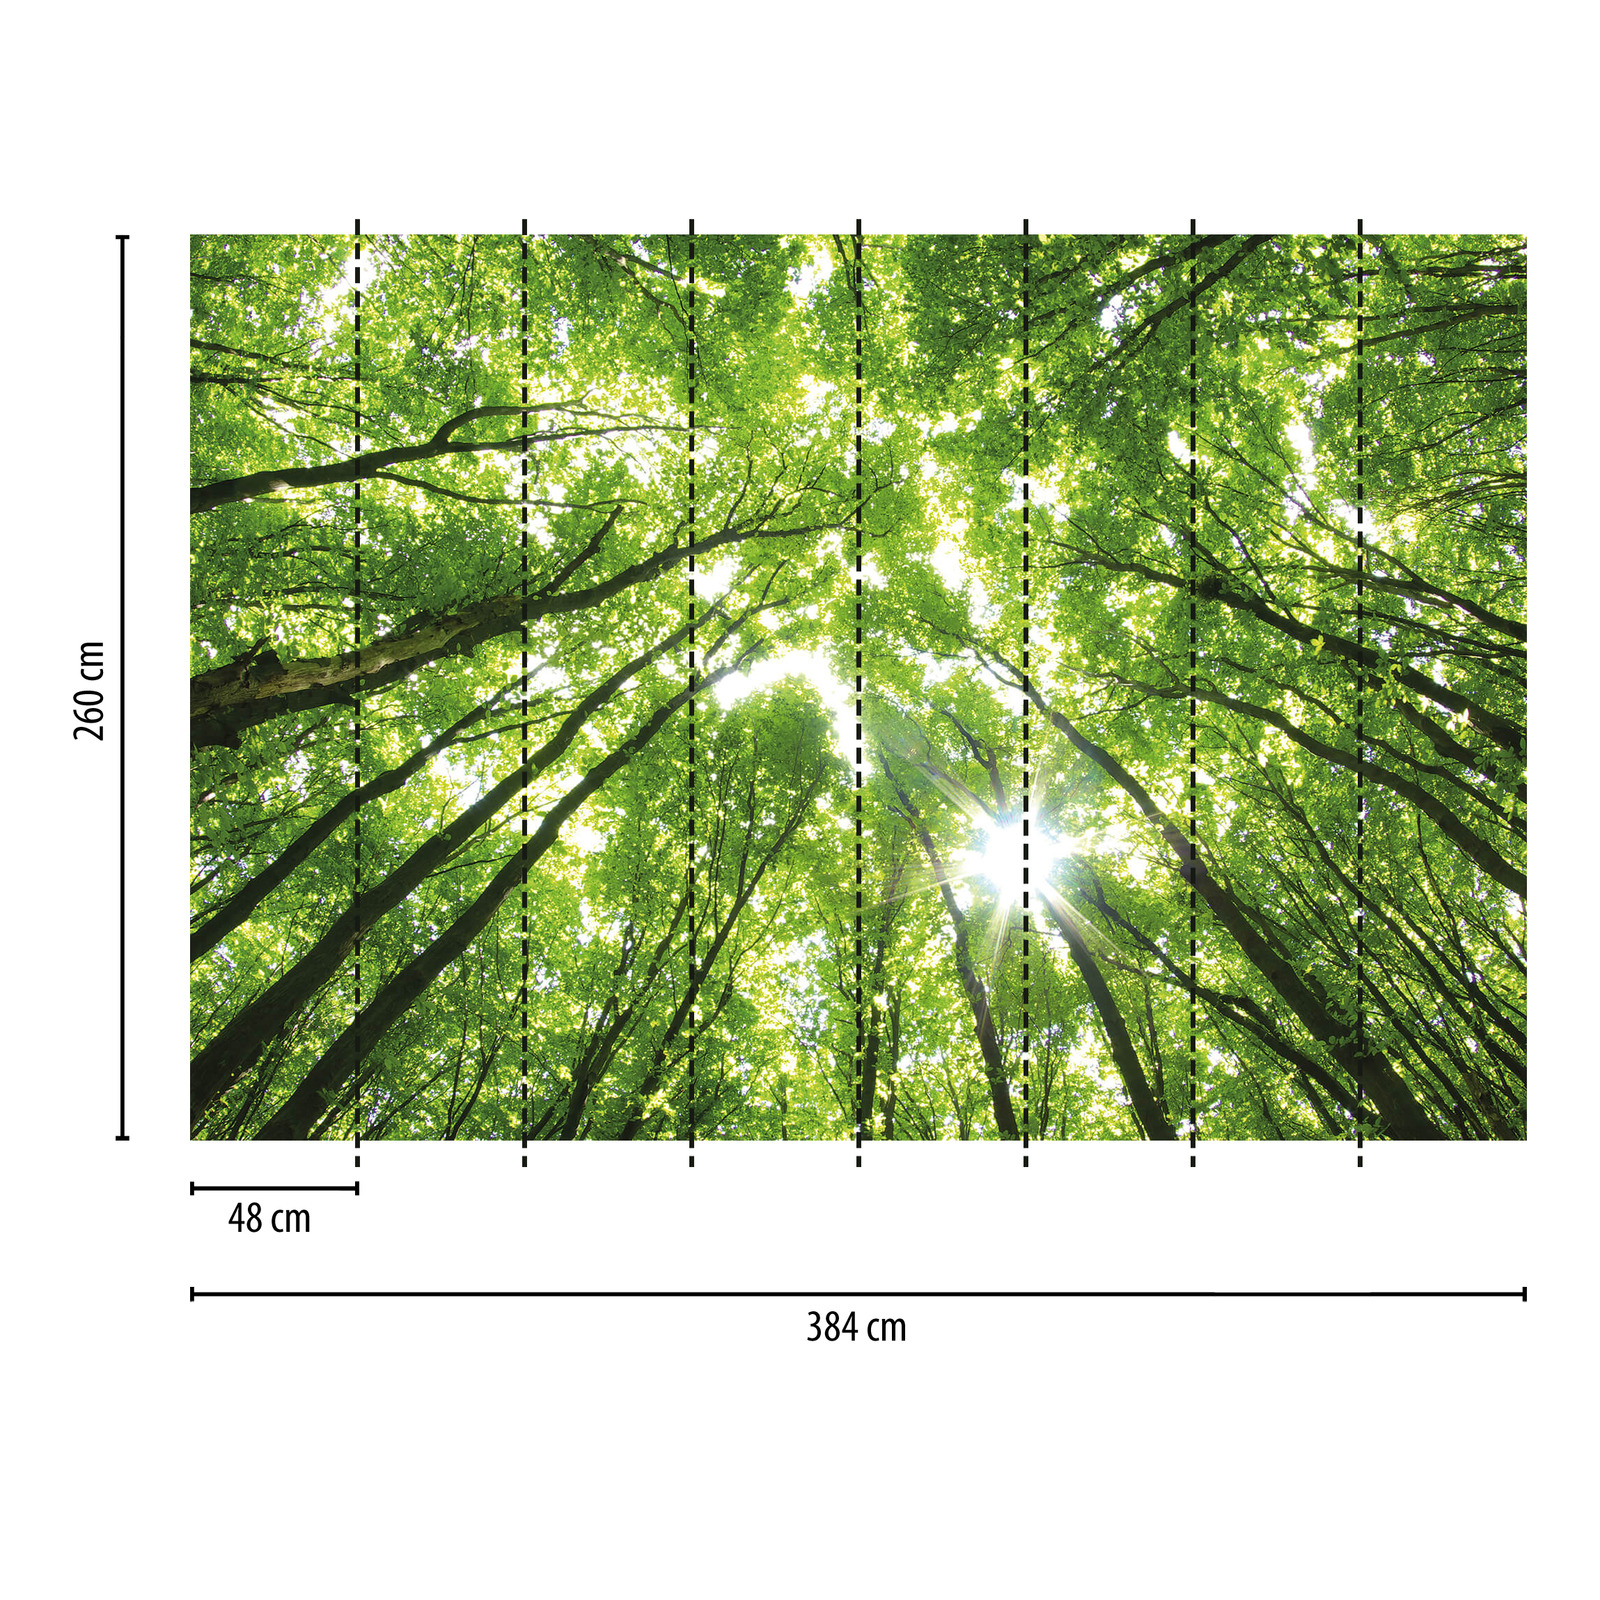             Fototapete Bäume mit Lichteinfall – Grün, Braun, Weiß
        